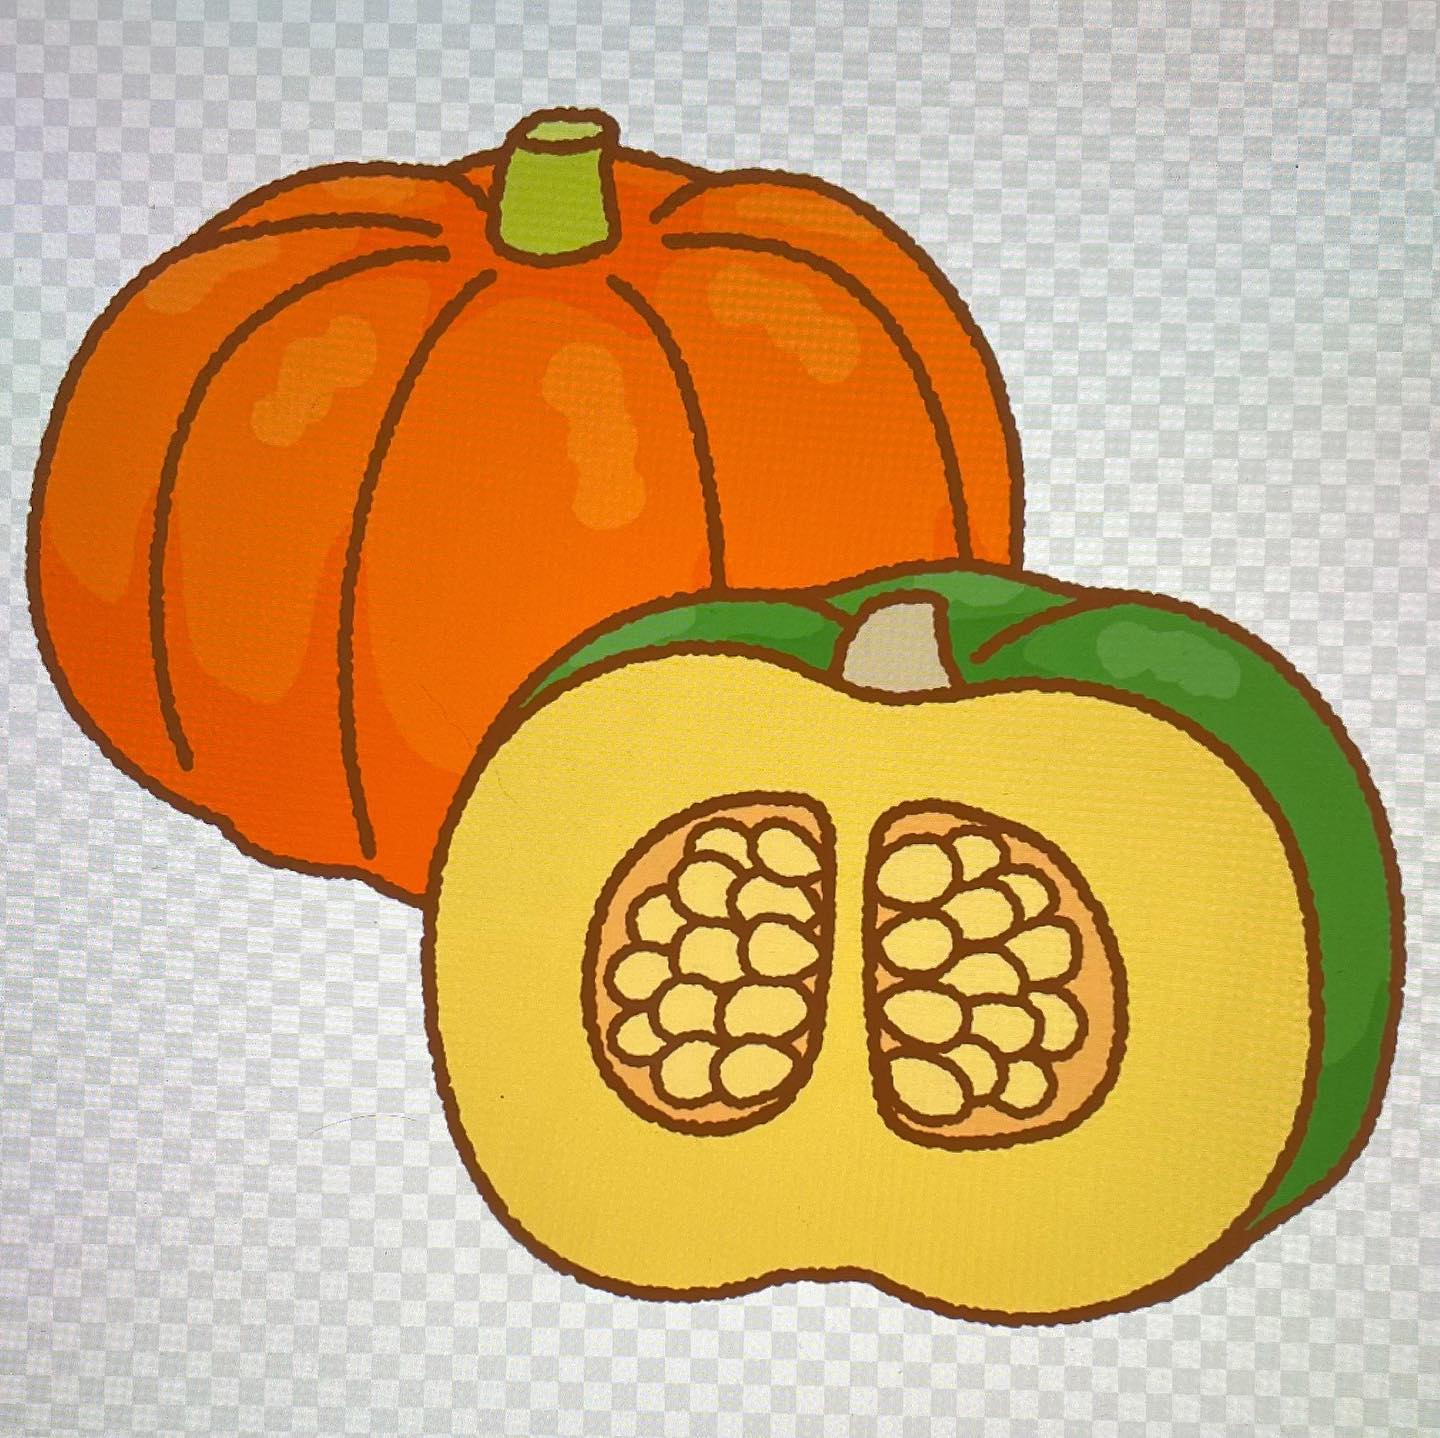 #かぼちゃの効能！野菜トップクラスのビタミンE含有量。ビタミンEは若返りのビタミンとして知られていますが、末梢血管を拡張することで血液循環を整える働きもあり、血行不良による冷え性、肩凝り、頭痛等の改善に役立つとされている。#かぼちゃ#かぼちゃ効果#ビタミンE#血行不良改善#神奈川県#横浜市#旭区#二俣川#相鉄線沿いカイロ#カイロプラクティック#ムゲン#ボディリフレッシュムゲン#骨盤矯正#頸椎矯正#胸椎矯正#中国氣功